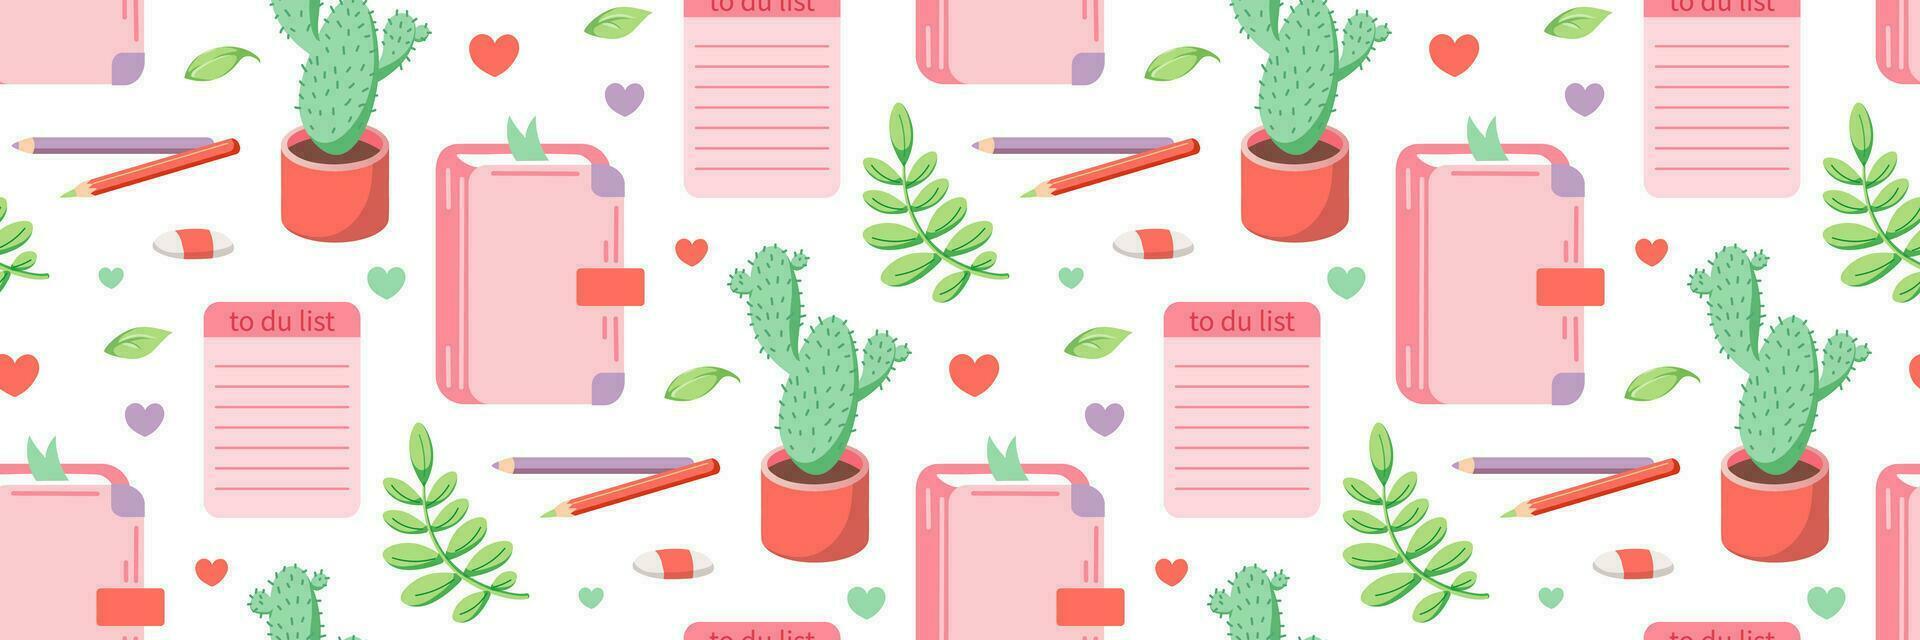 dagboek van meisje vector naadloos patroon. hand- getrokken schrijfbehoeften element set. vlak illustratie. roze kleur.